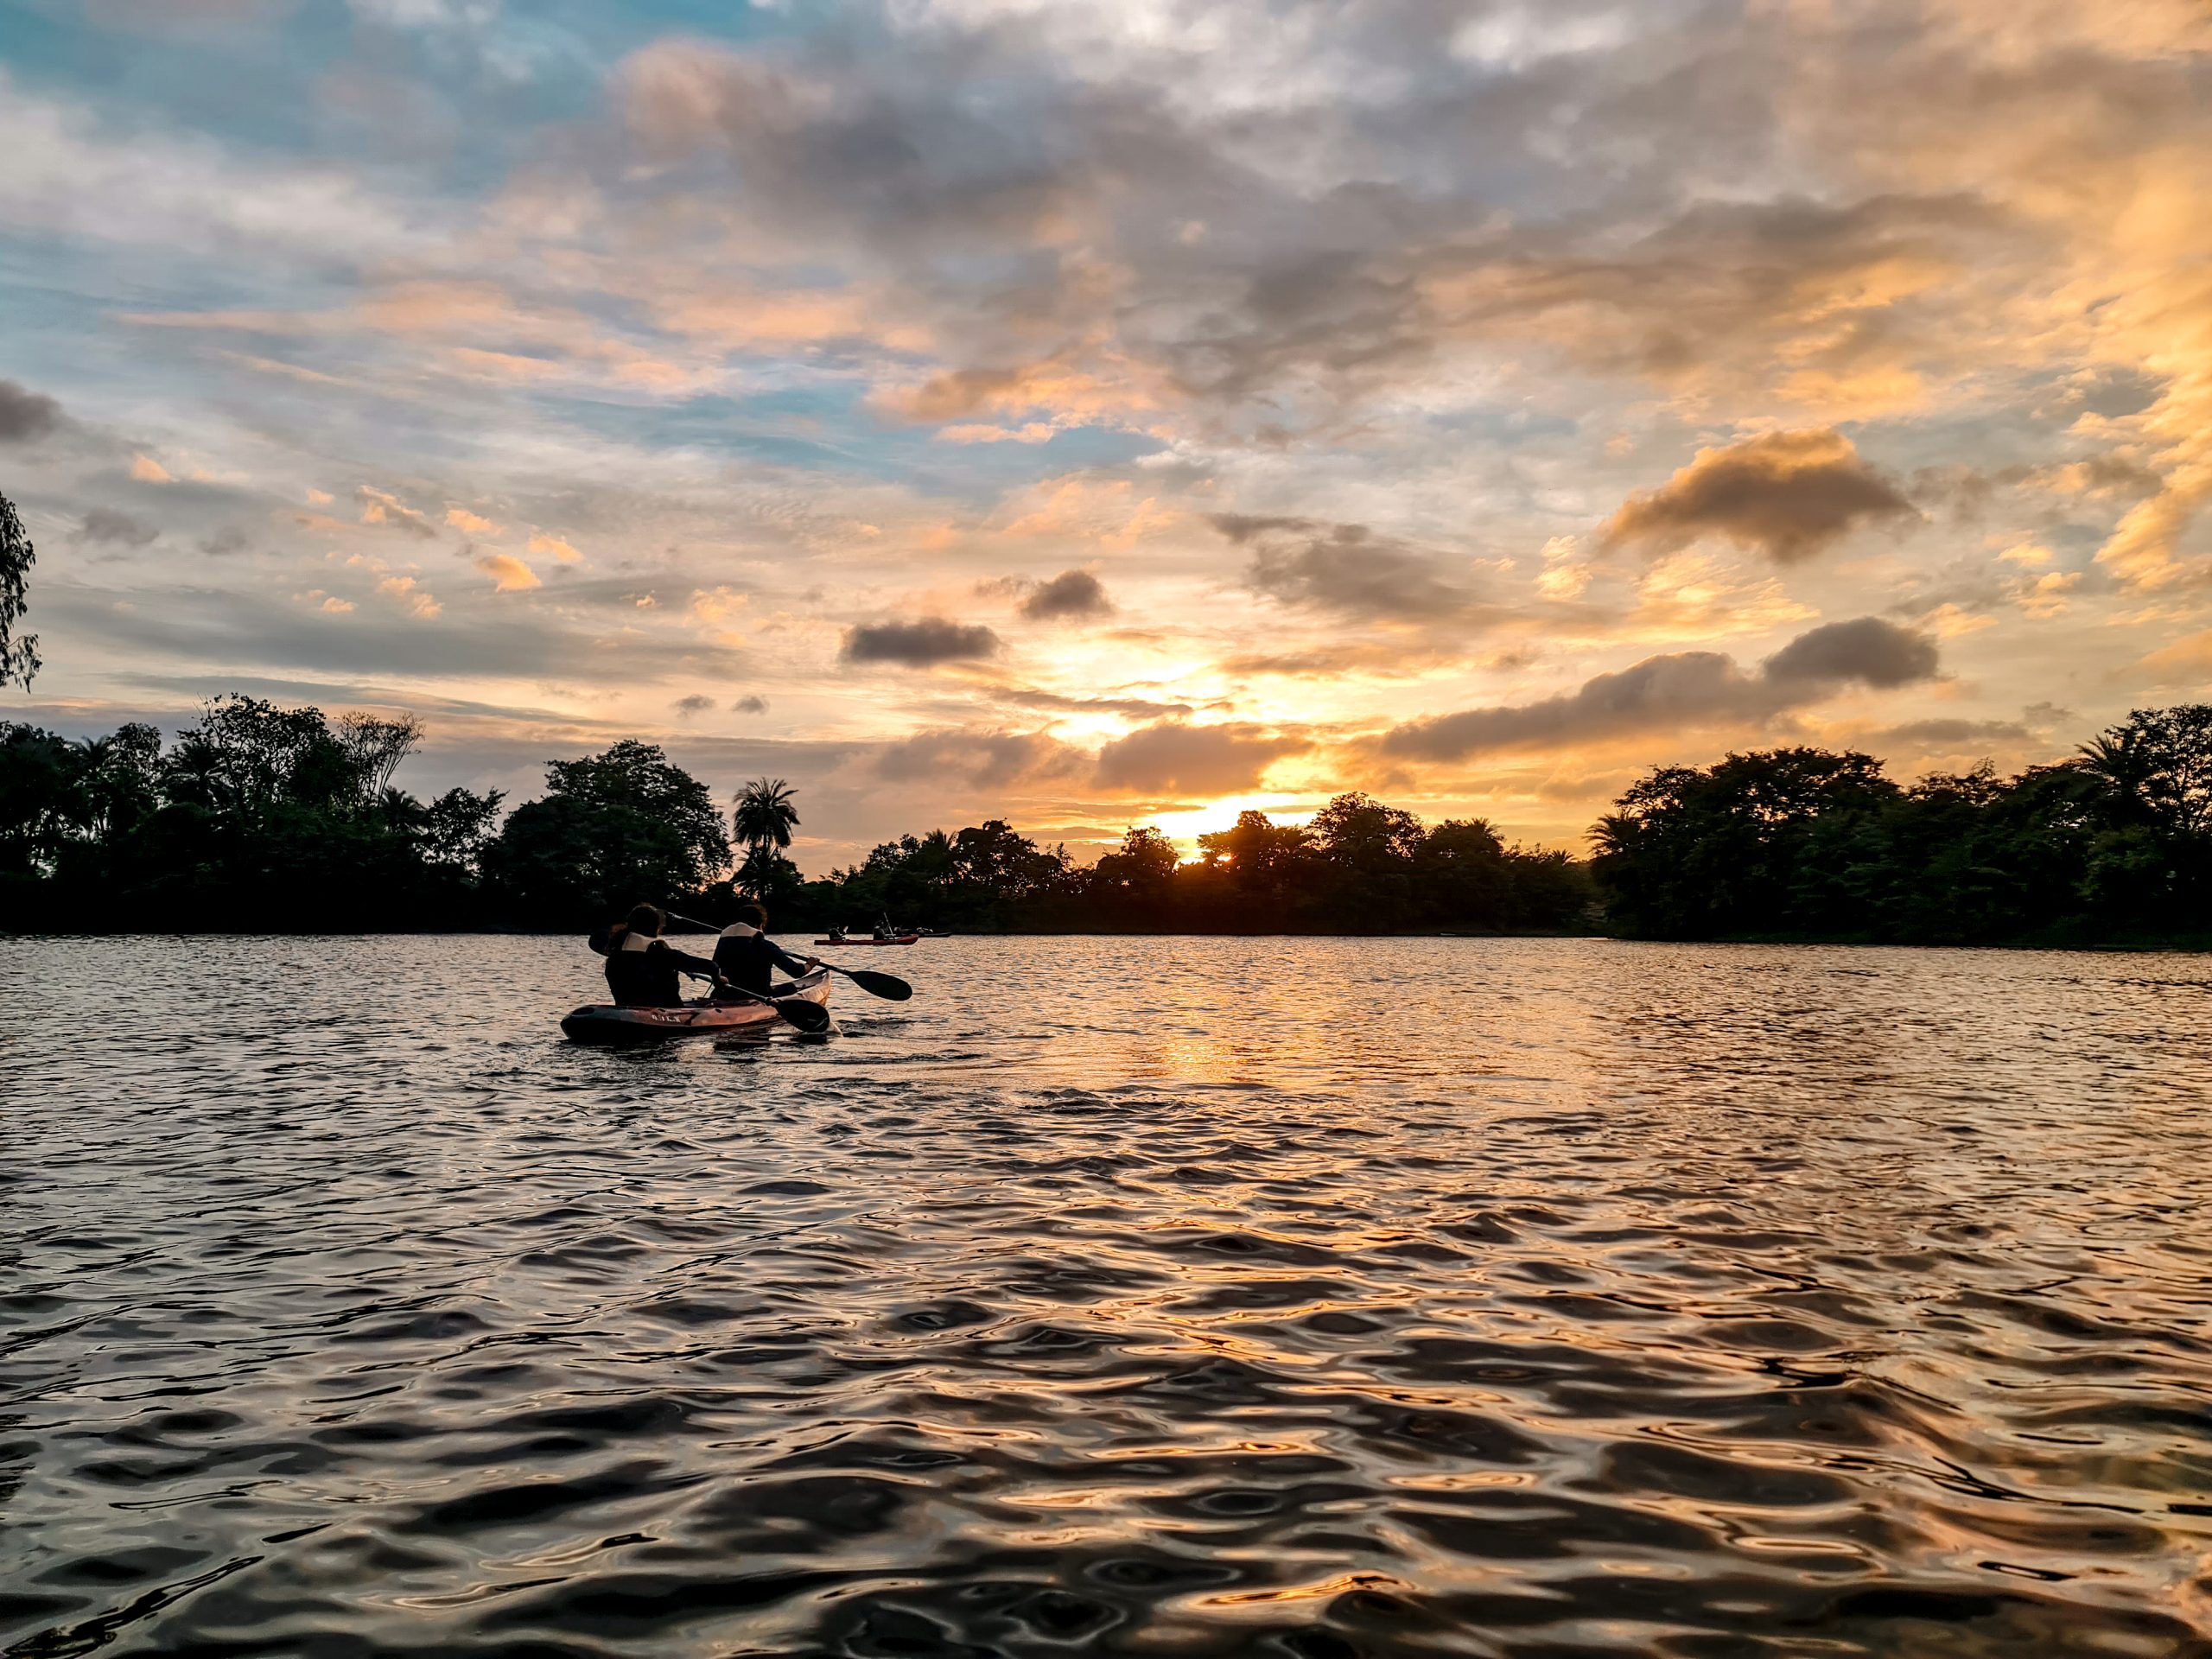 Kayaking in a lake